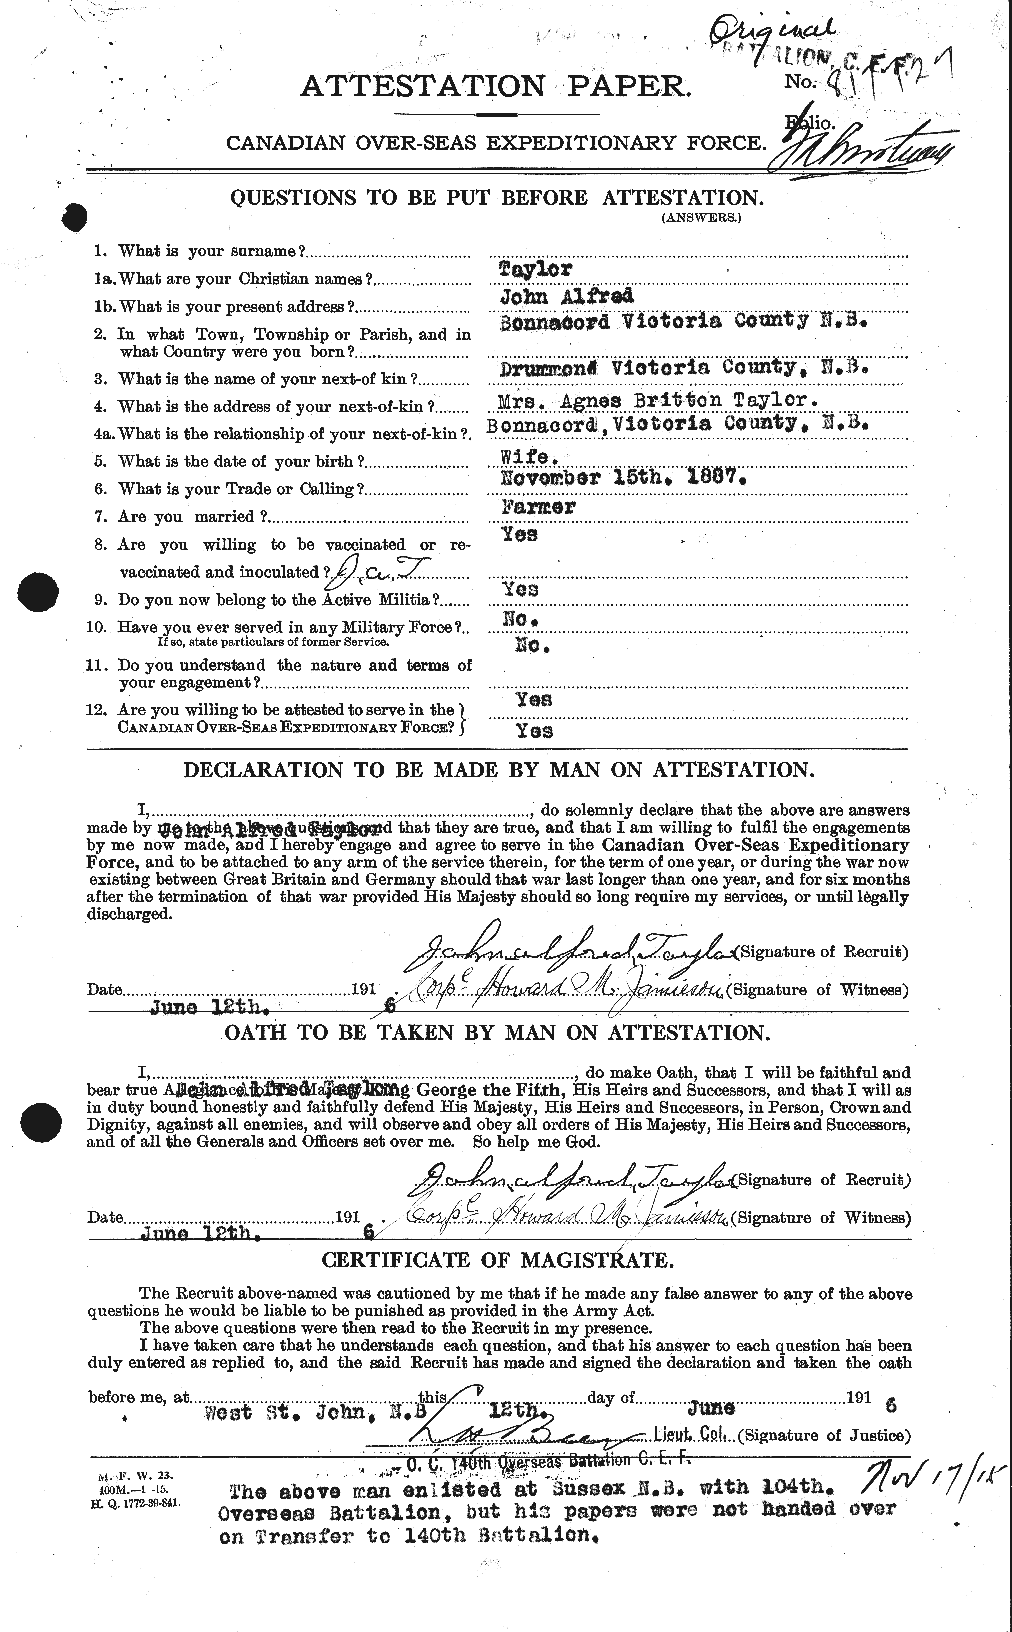 Dossiers du Personnel de la Première Guerre mondiale - CEC 627045a